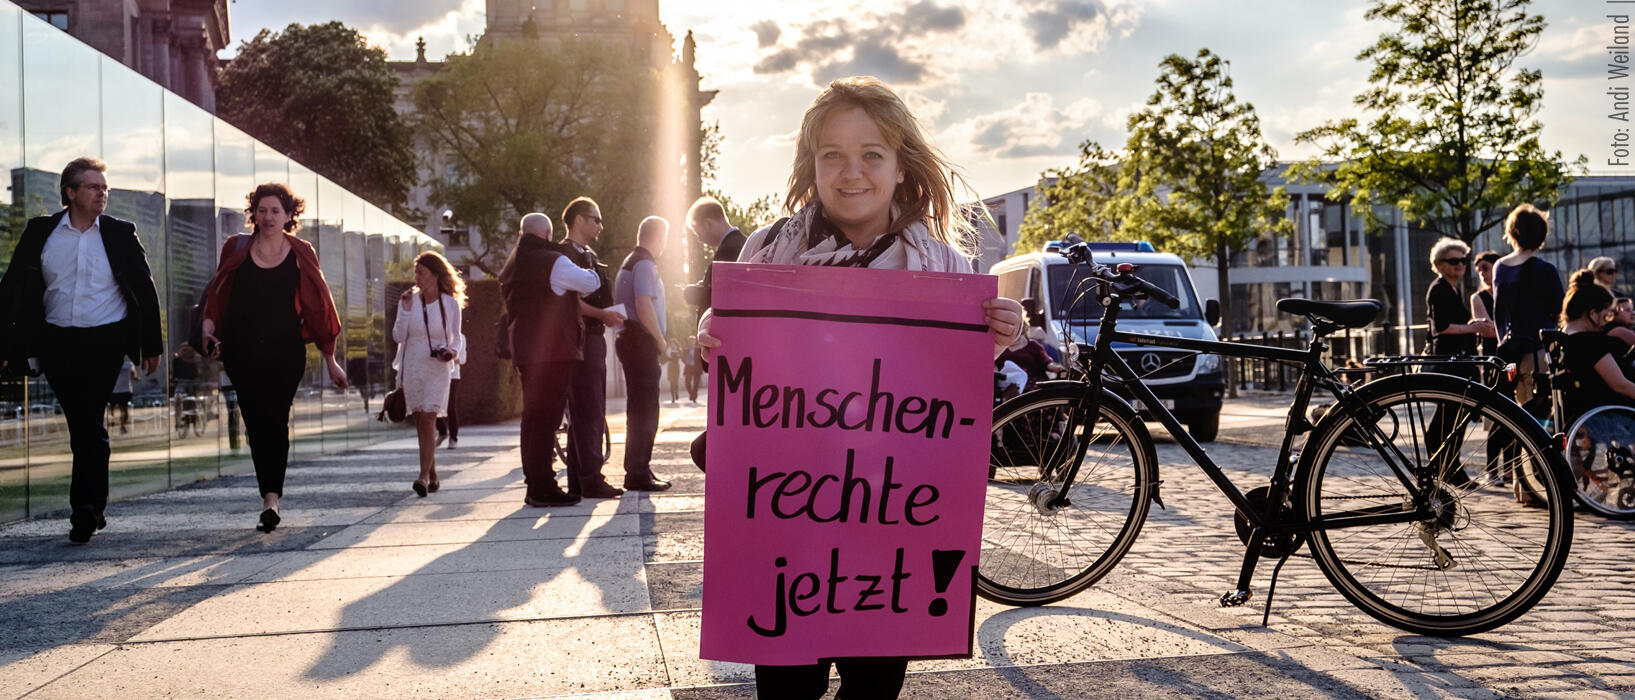 Eine kleinwüchsige Frau steht vor dem Reichstagsgebäude in Berlin und hält ein Plakat mit der Aufschrift "Menschen rechte jetzt!" hoch.